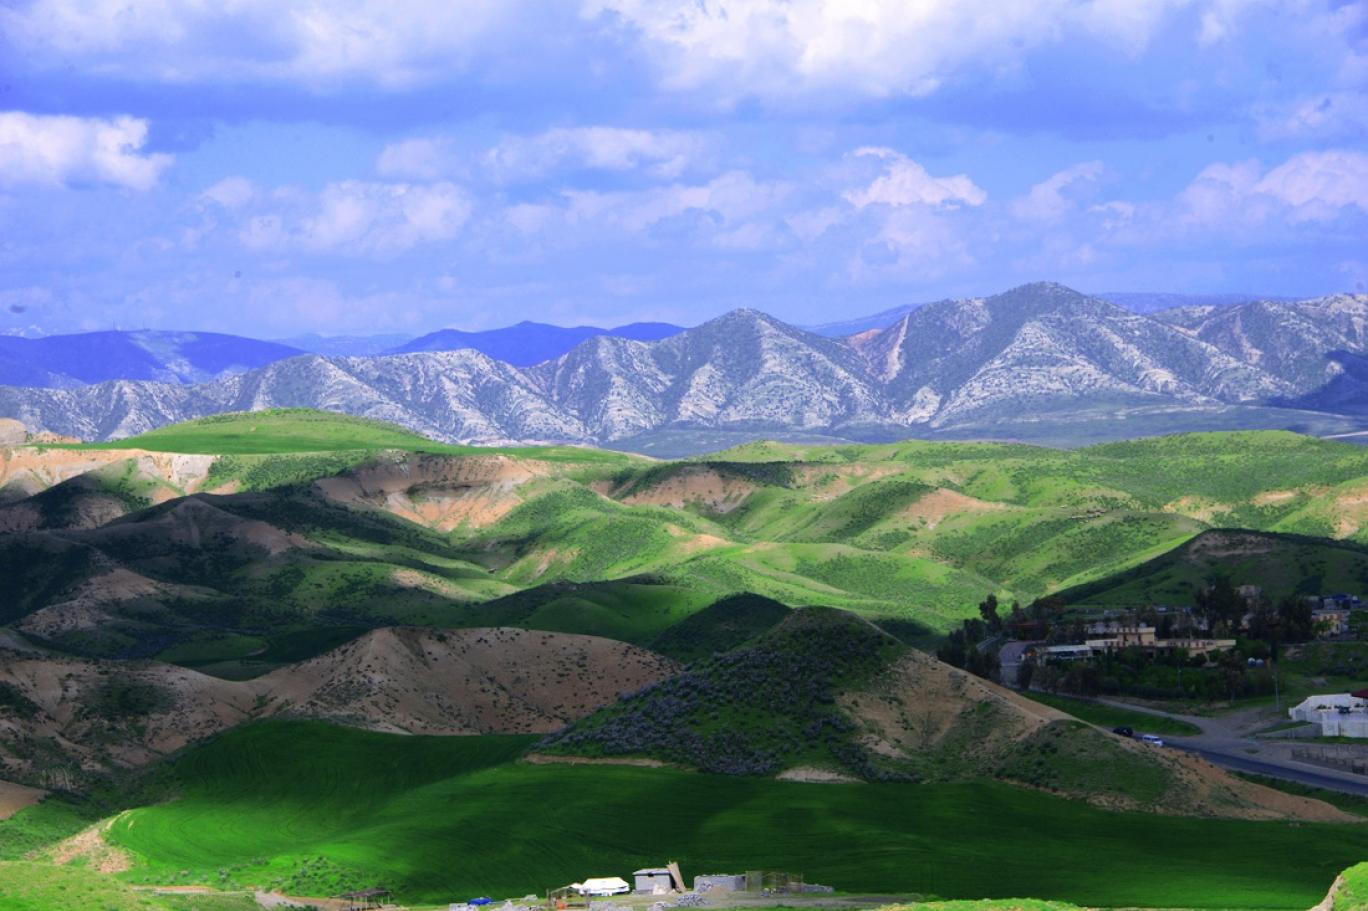 إقليم كوردستان يعفي القطاع السياحي من الضرائب لتوقفه بنسبة 100%